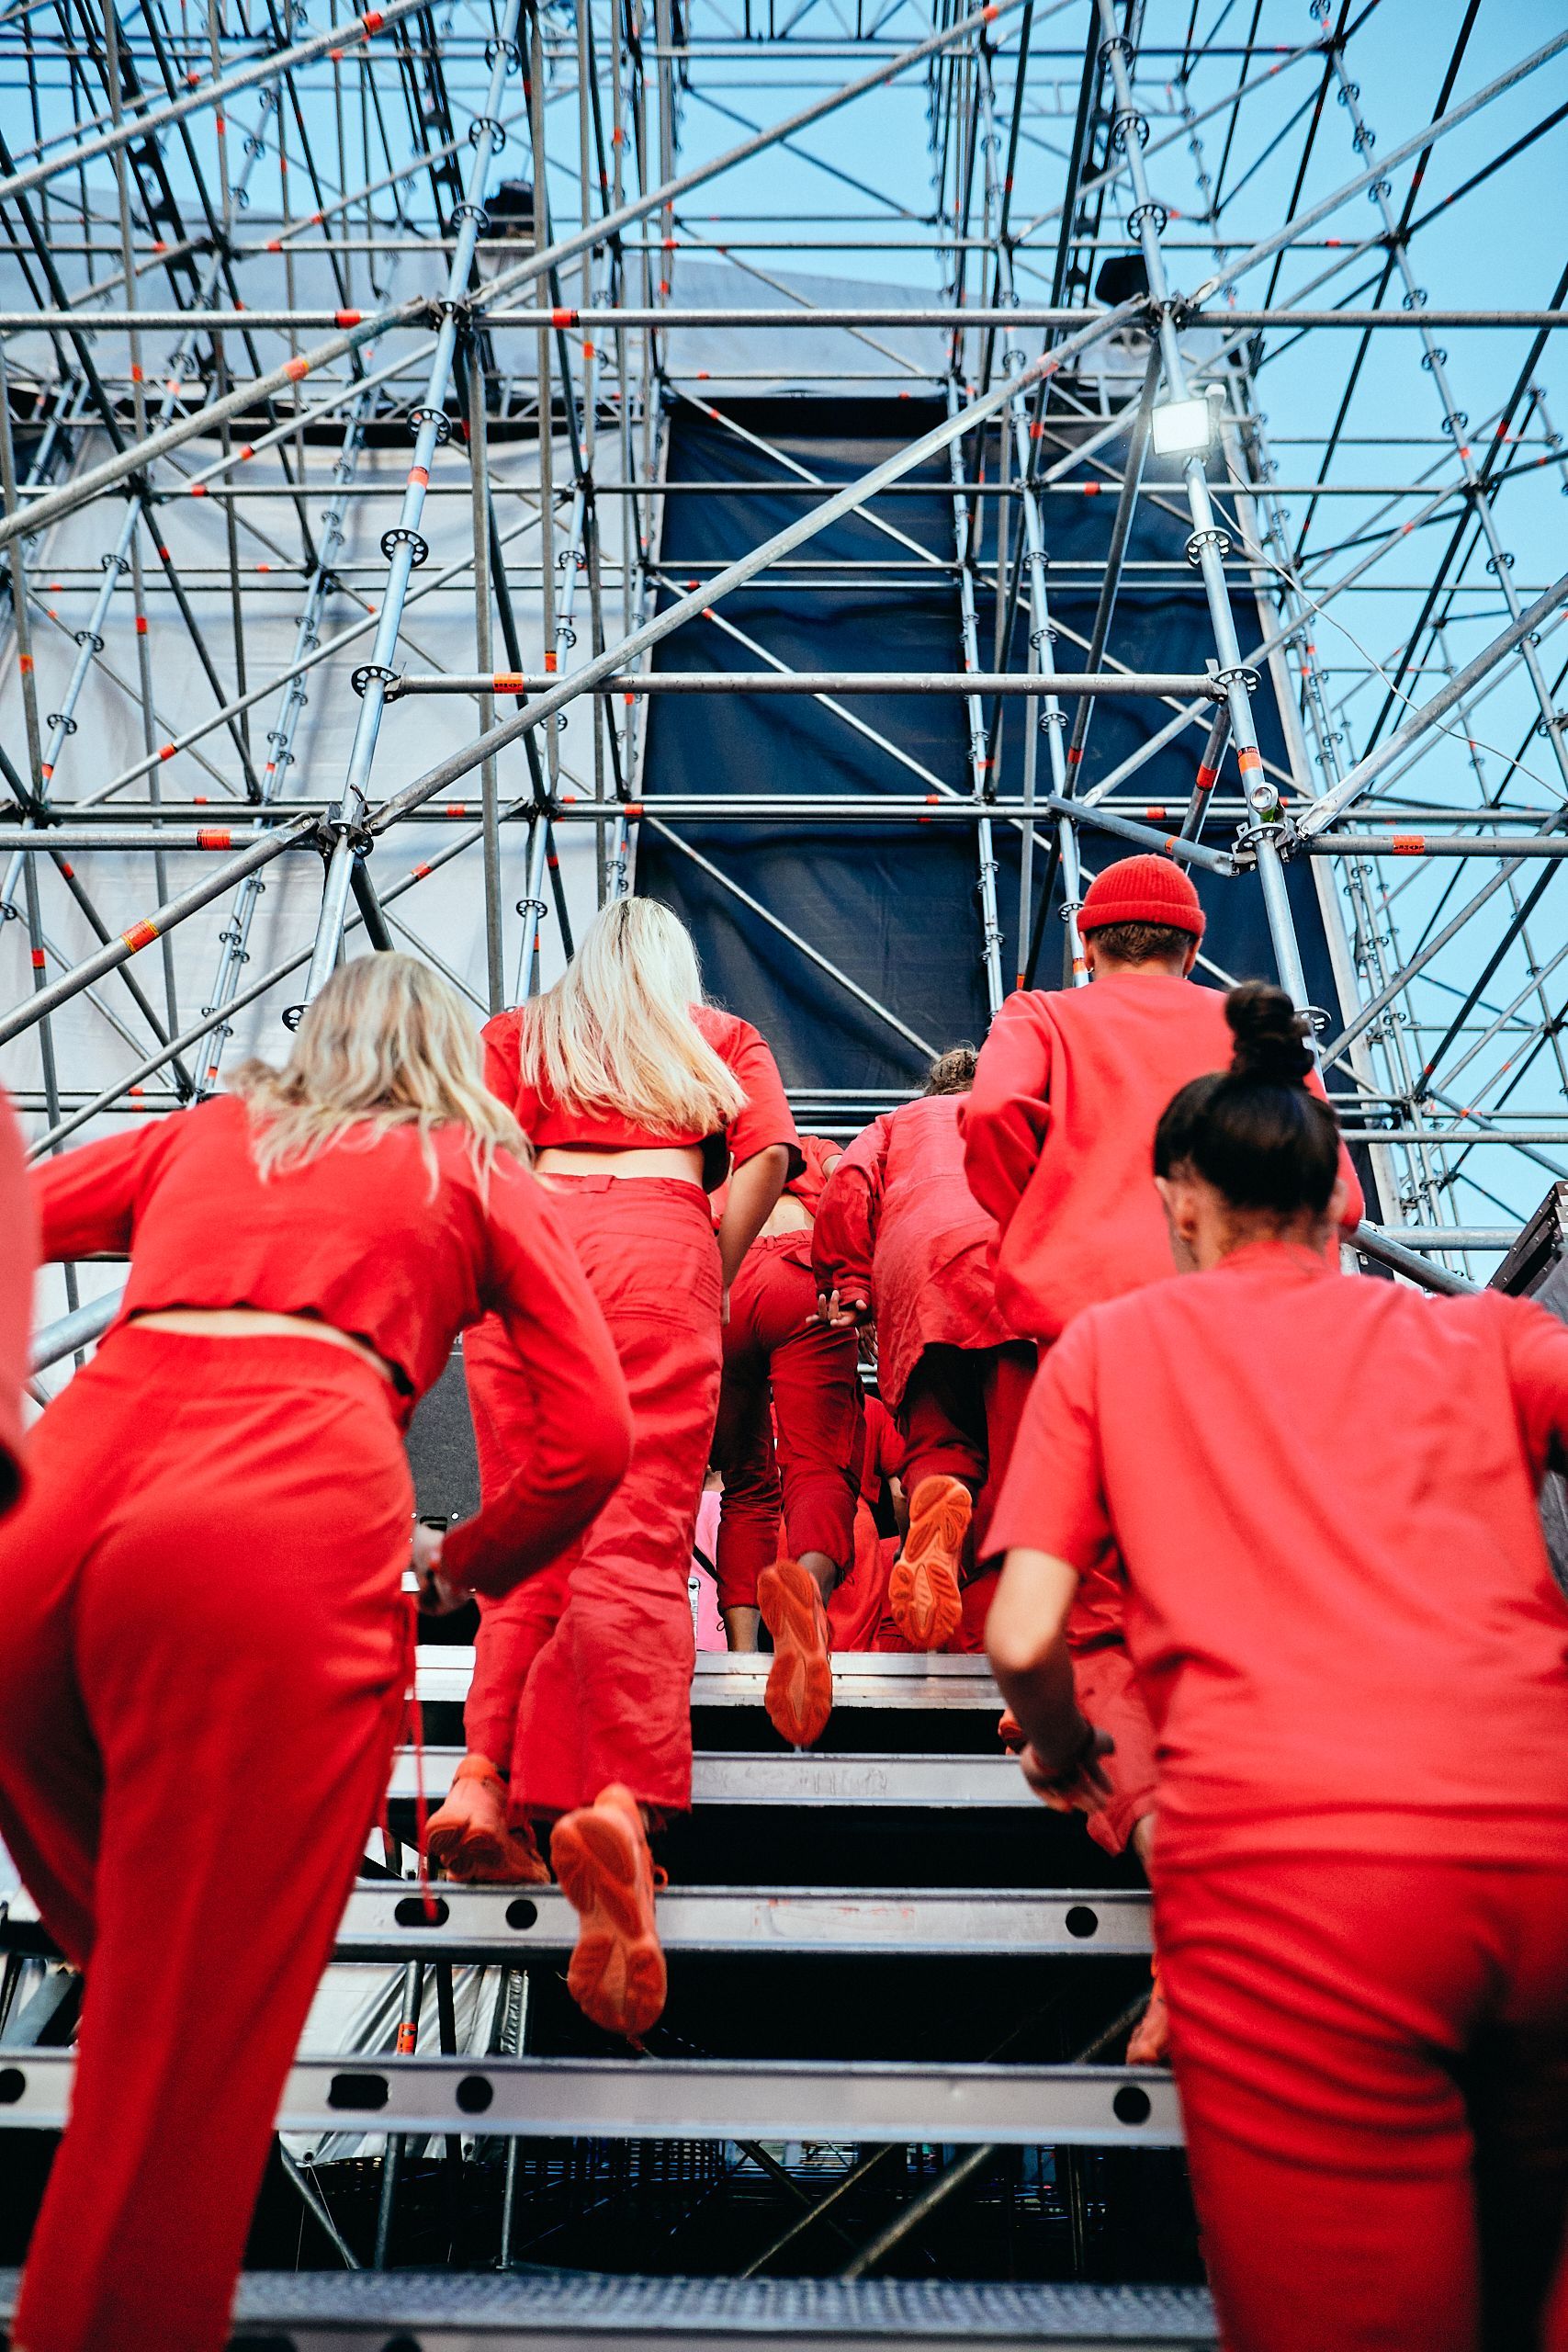 80 tanečníkov v rovnakých červených outfitoch ovládlo Grape festival